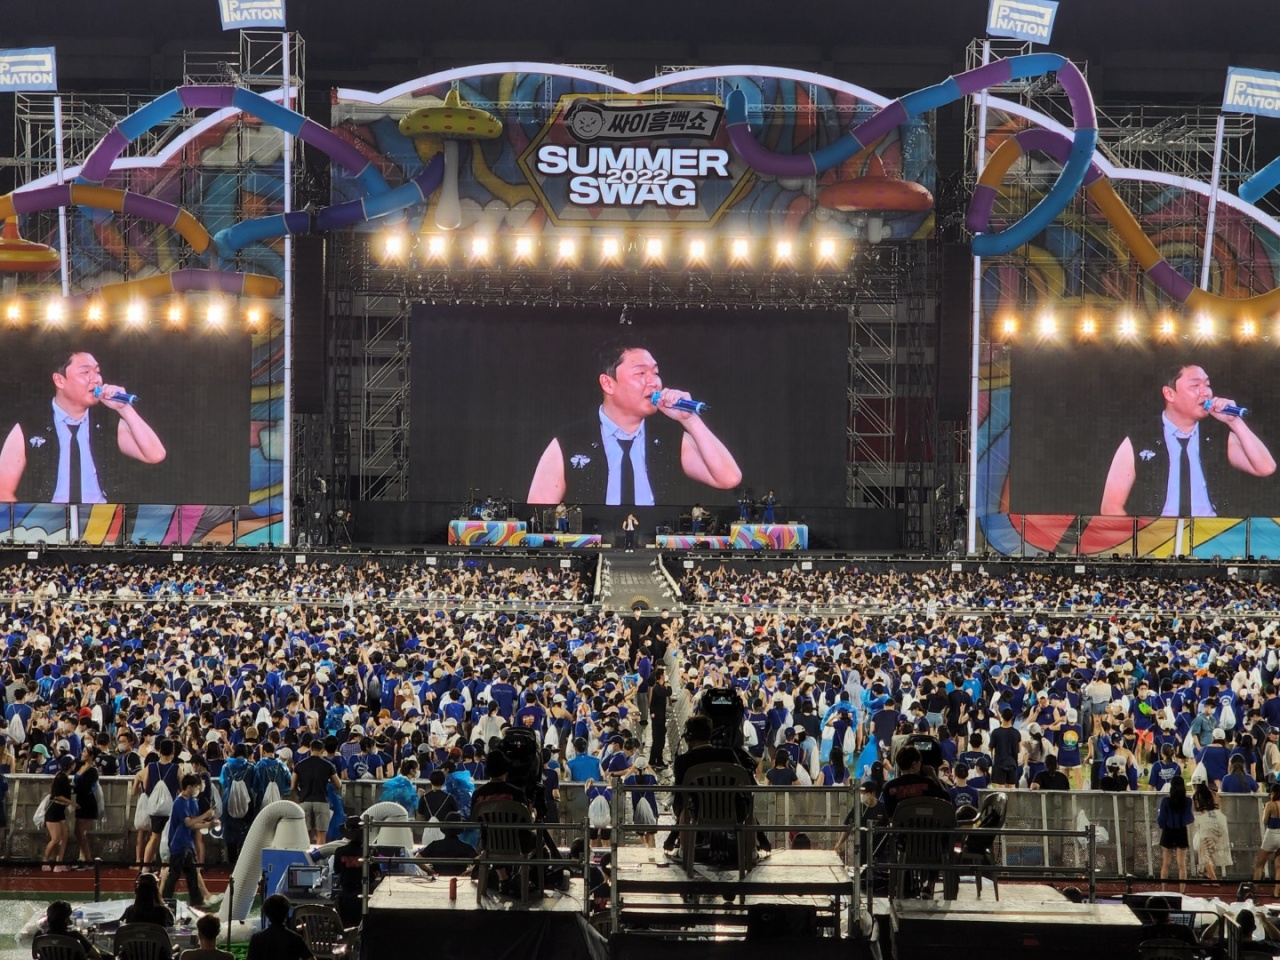 싸이가 1일 서울 잠실 올림픽주경기장에서 열린 싸이 '서머 스웩 2022' 콘서트 무대에 올랐다.  (지예은/코리아헤럴드)